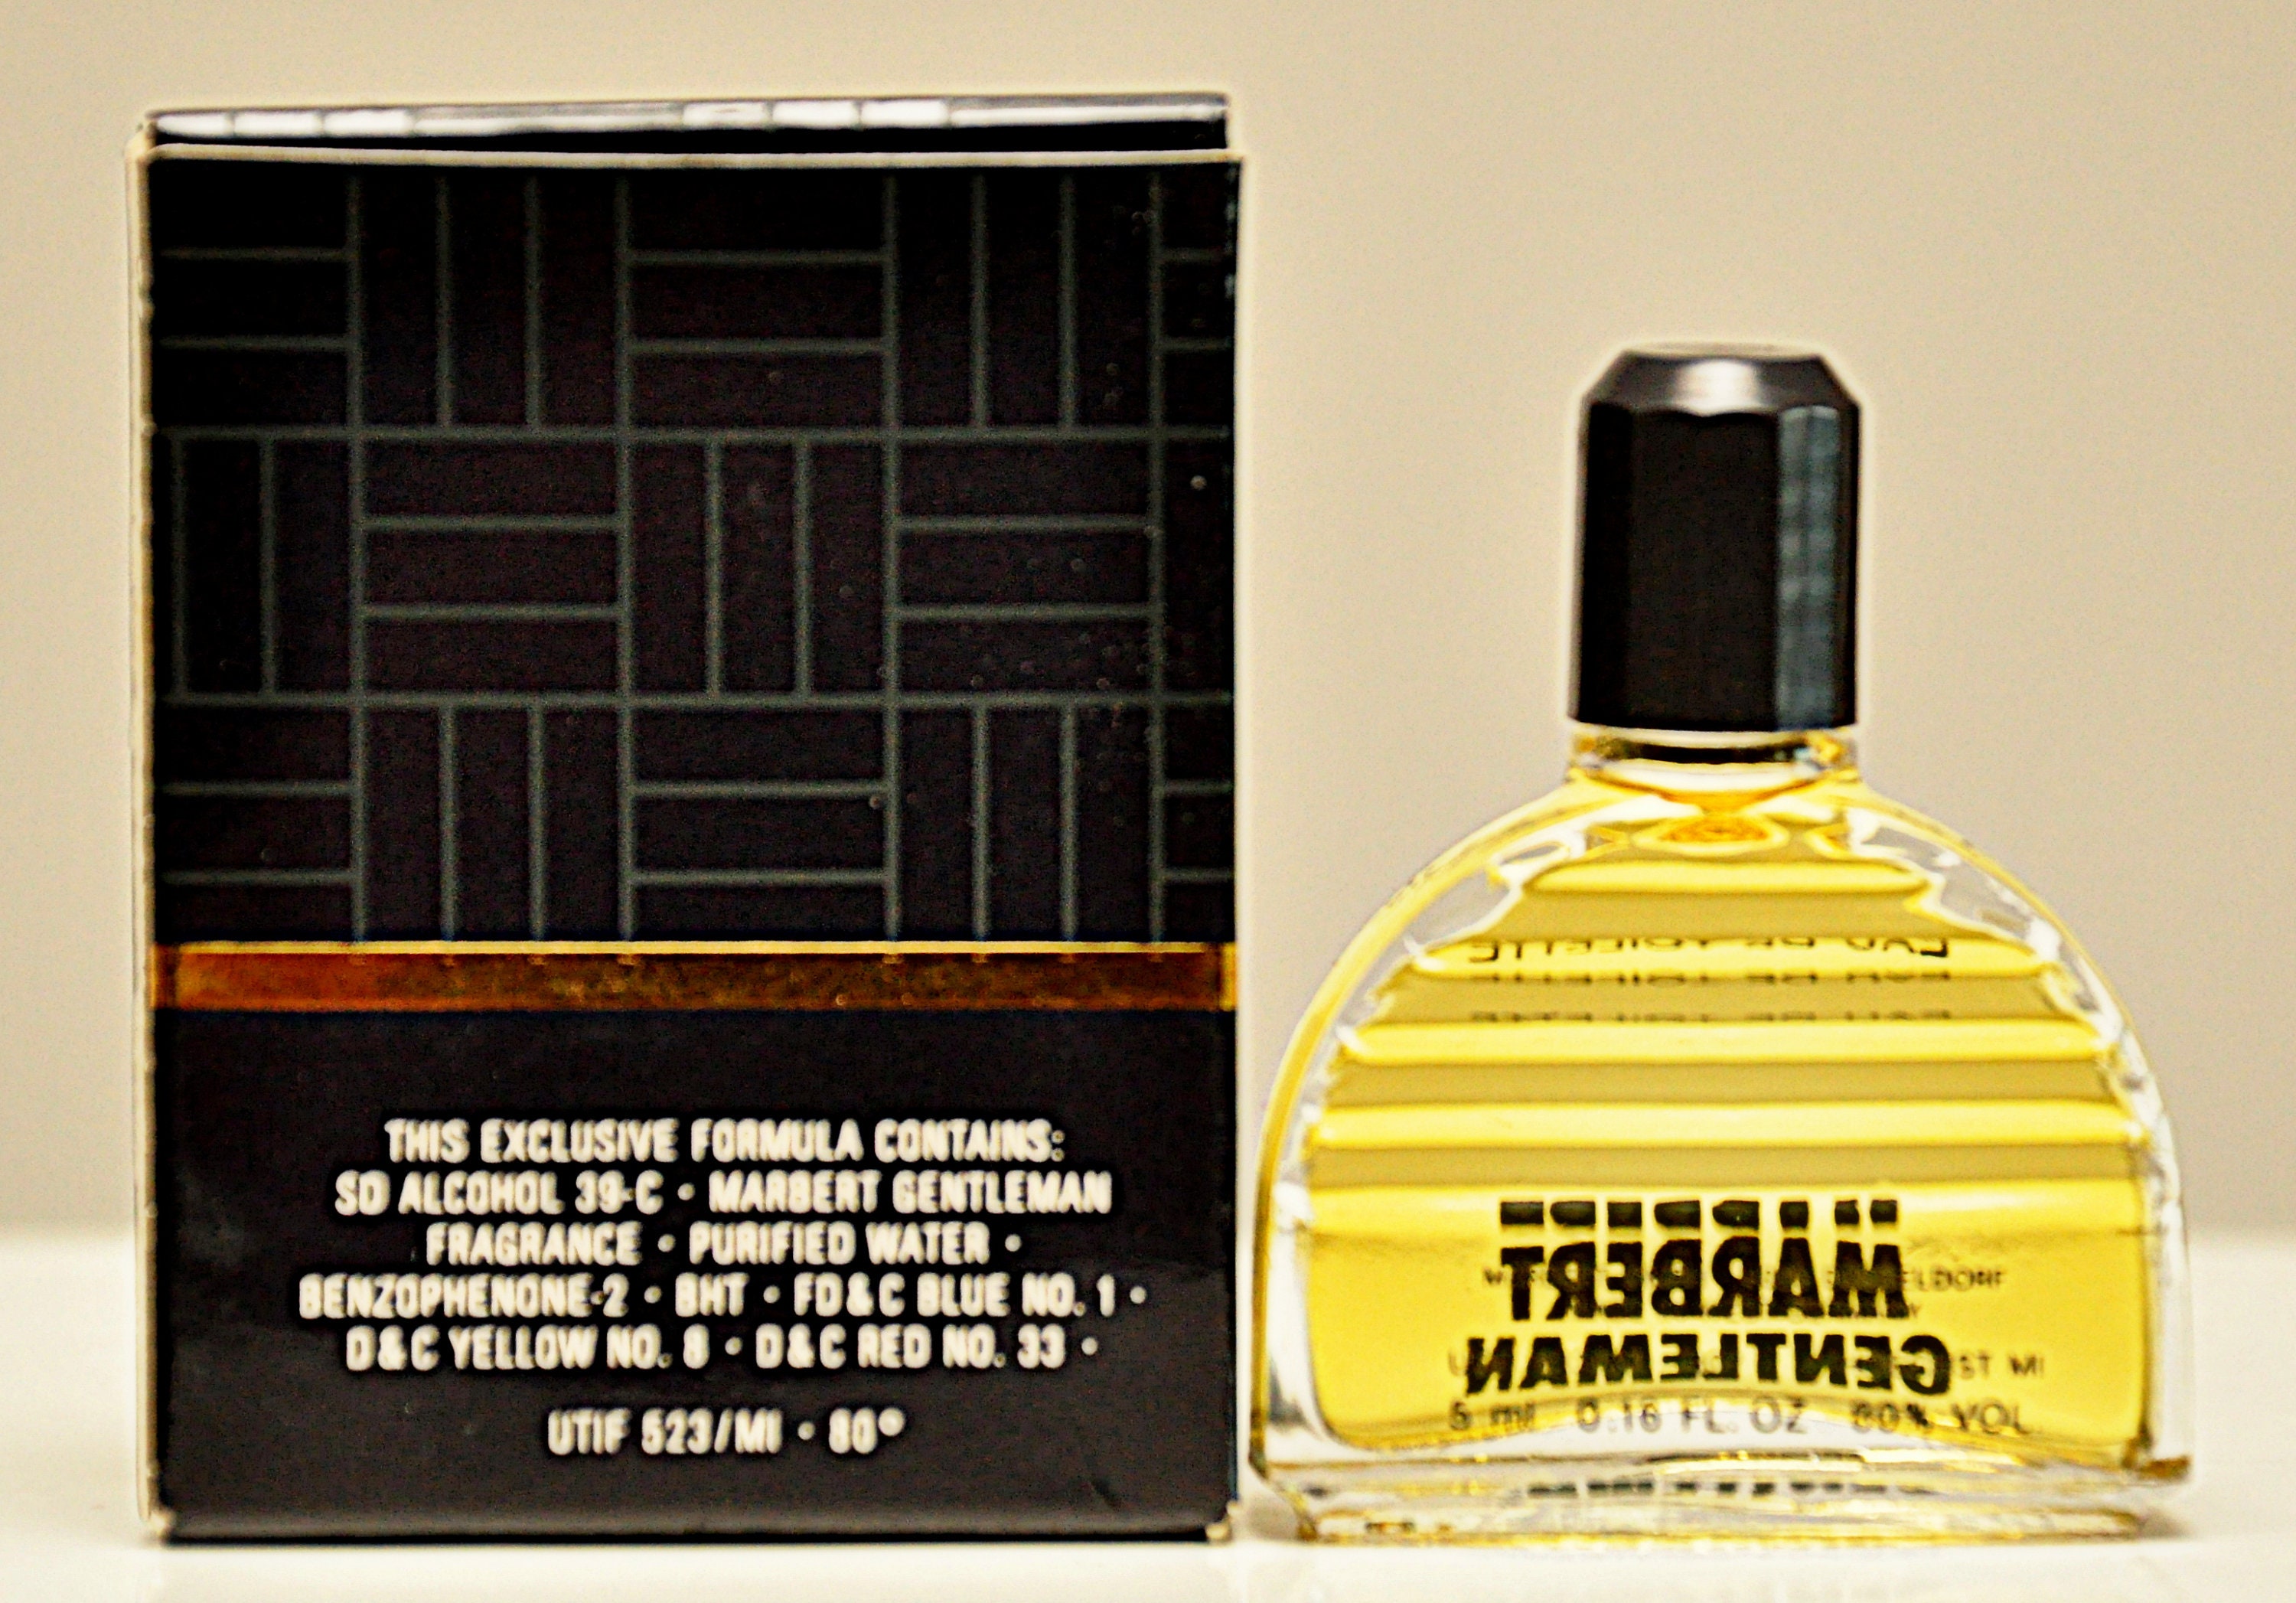 Gentleman Marbert cologne - a fragrance for men 1986